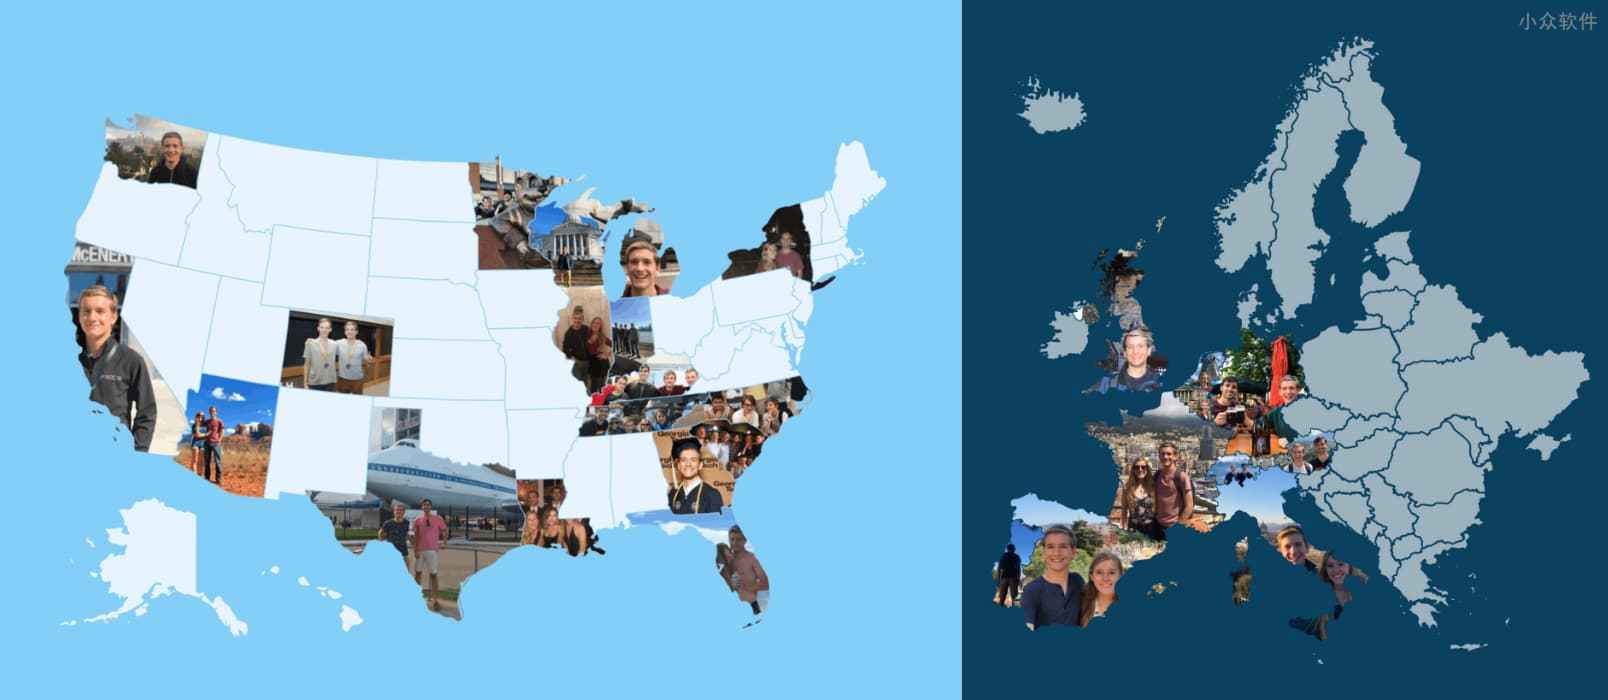 Photo Map – 用照片填充地图轮廓，漂亮的创意旅行地图[iPhone/iPad]